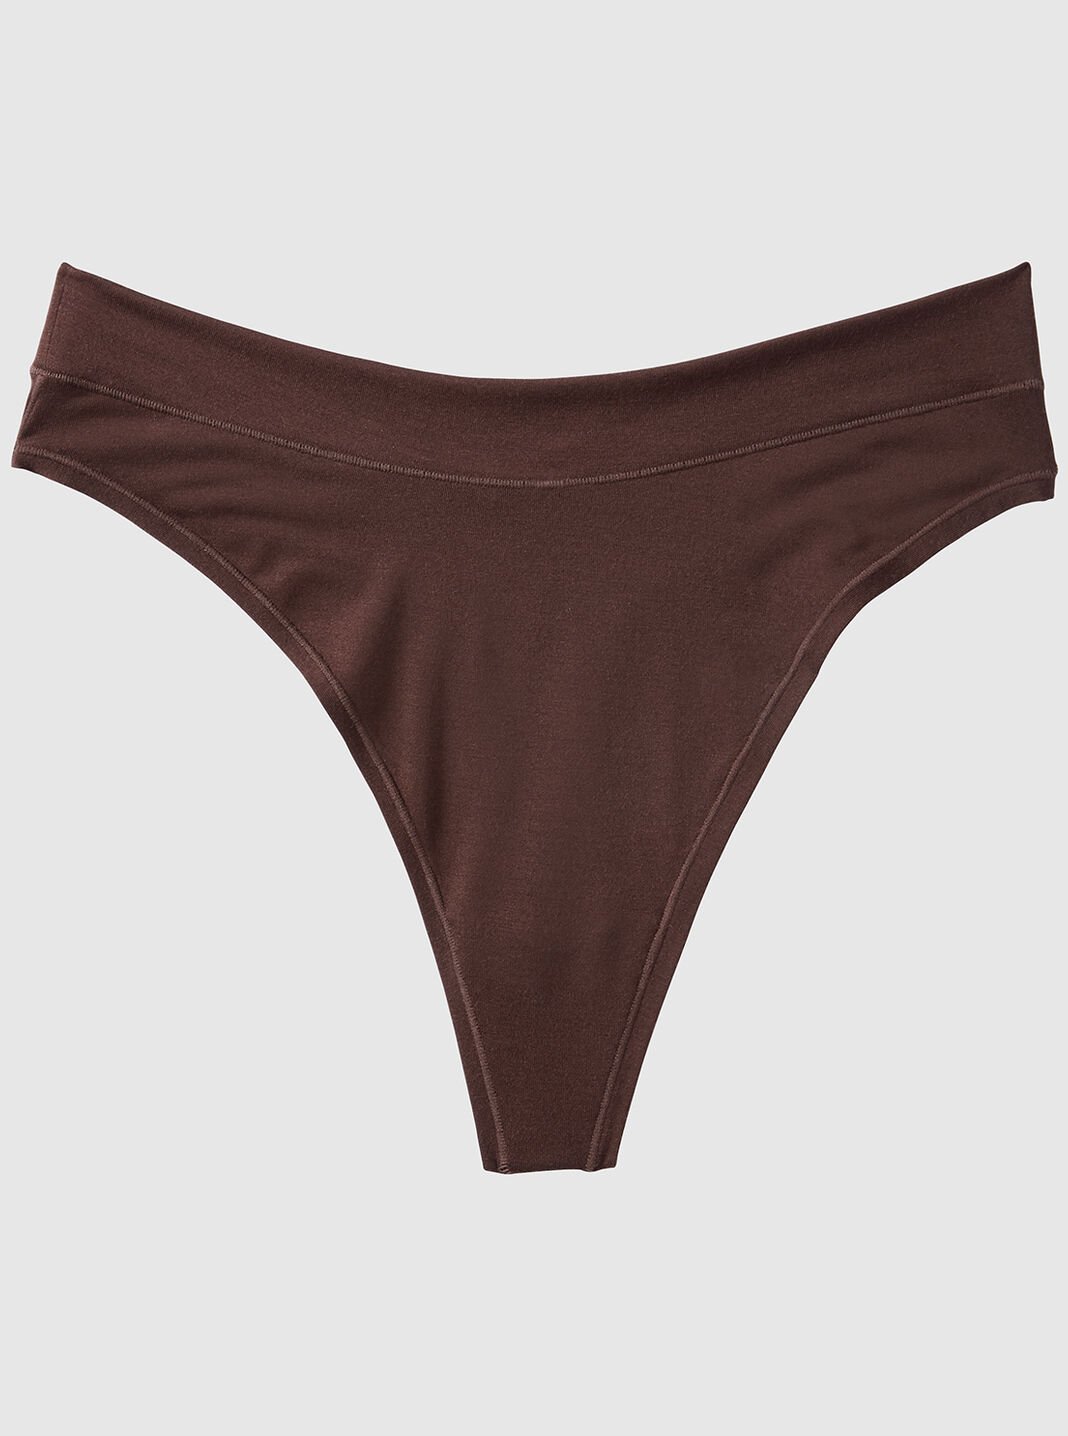 High Waist Panty: Buy High Waist Underwear Online